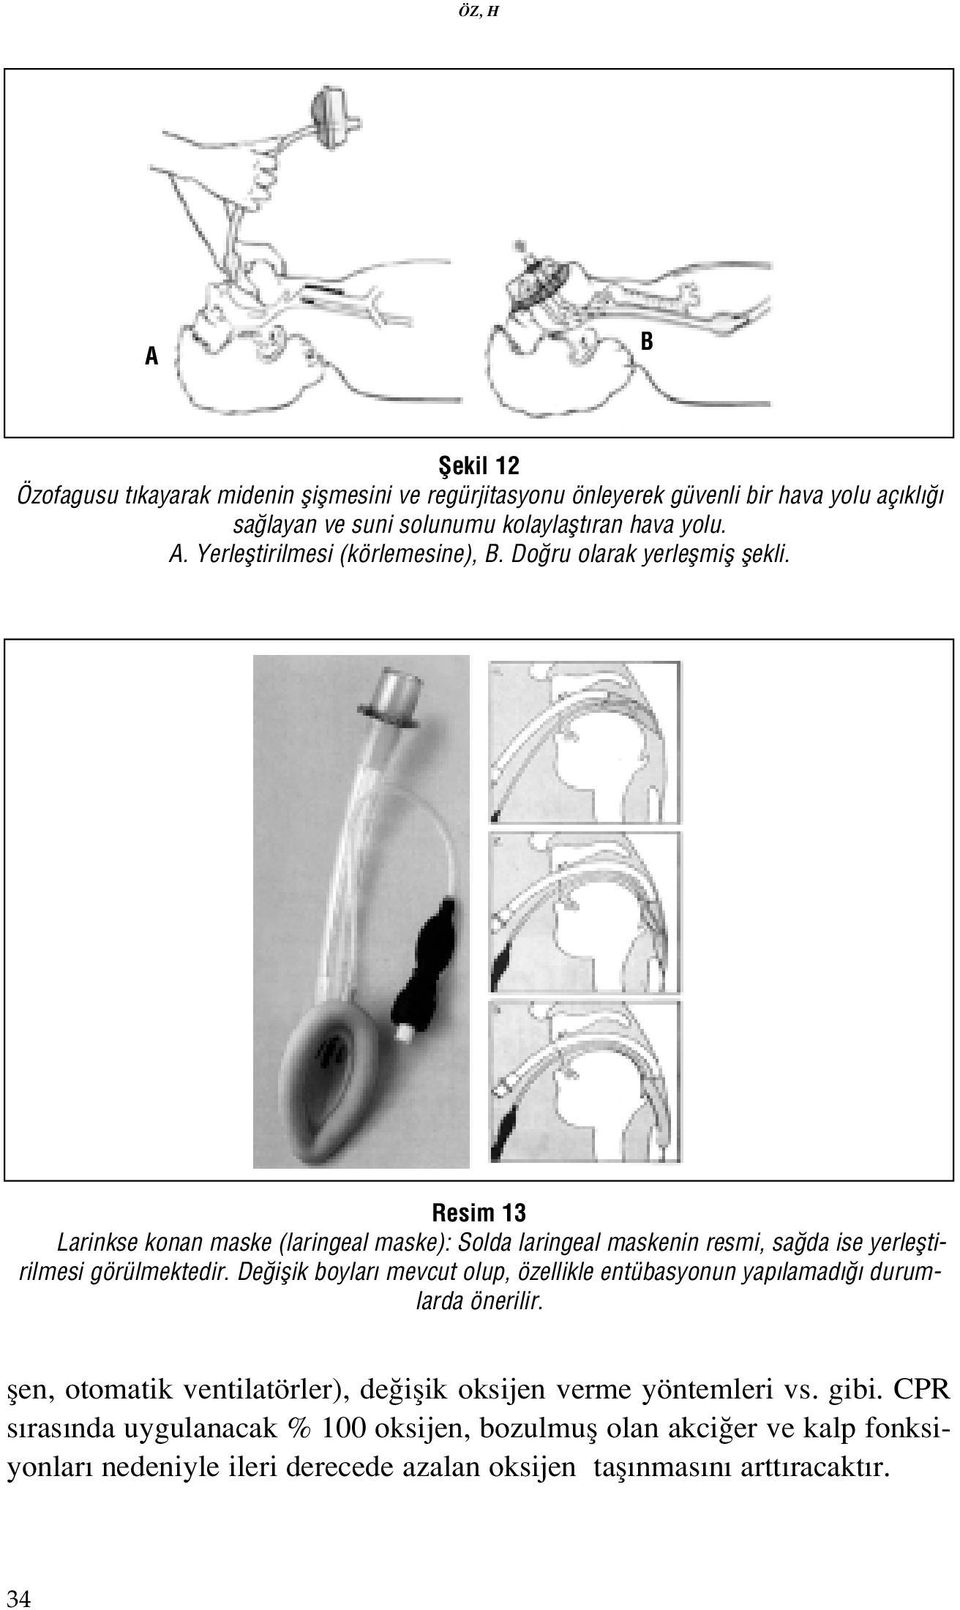 Resim 13 Larinkse konan maske (laringeal maske): Solda laringeal maskenin resmi, sa da ise yerlefltirilmesi görülmektedir.